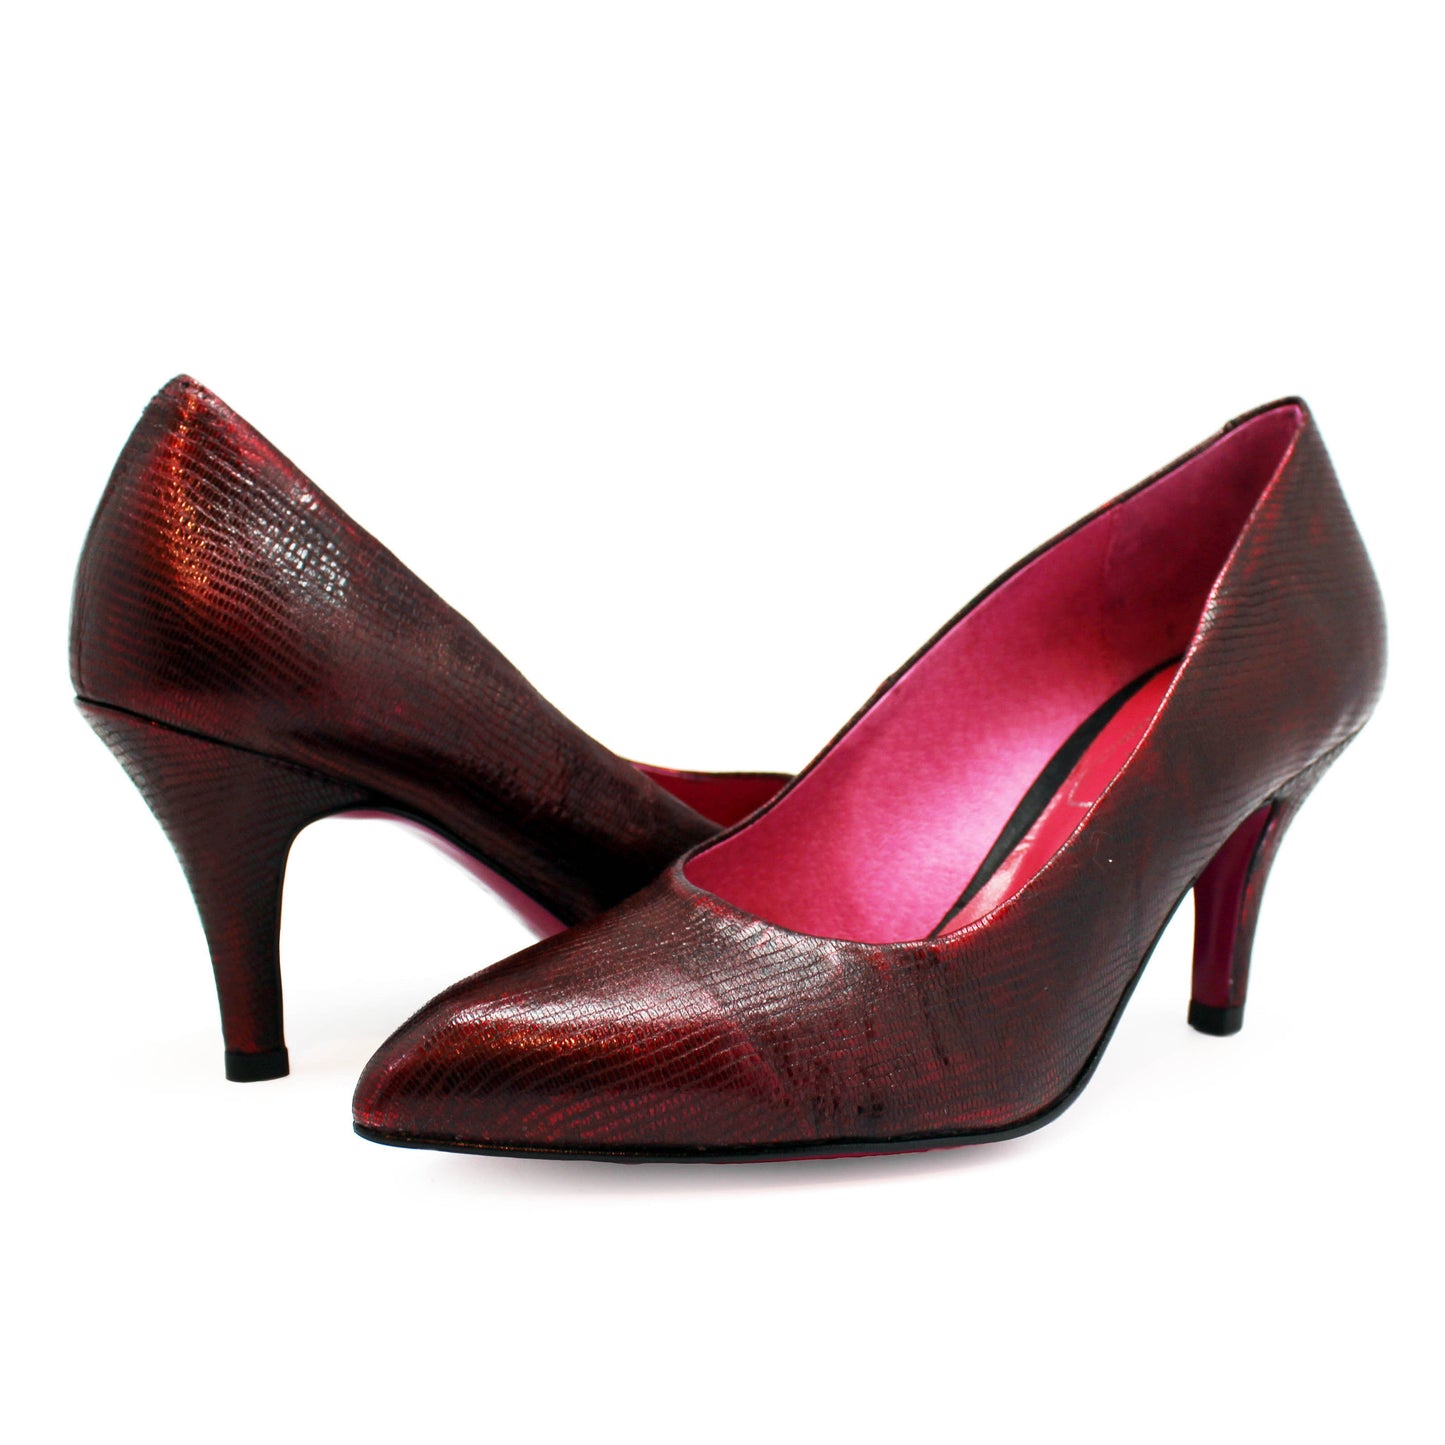 Zut - Red Metallic stiletto heel